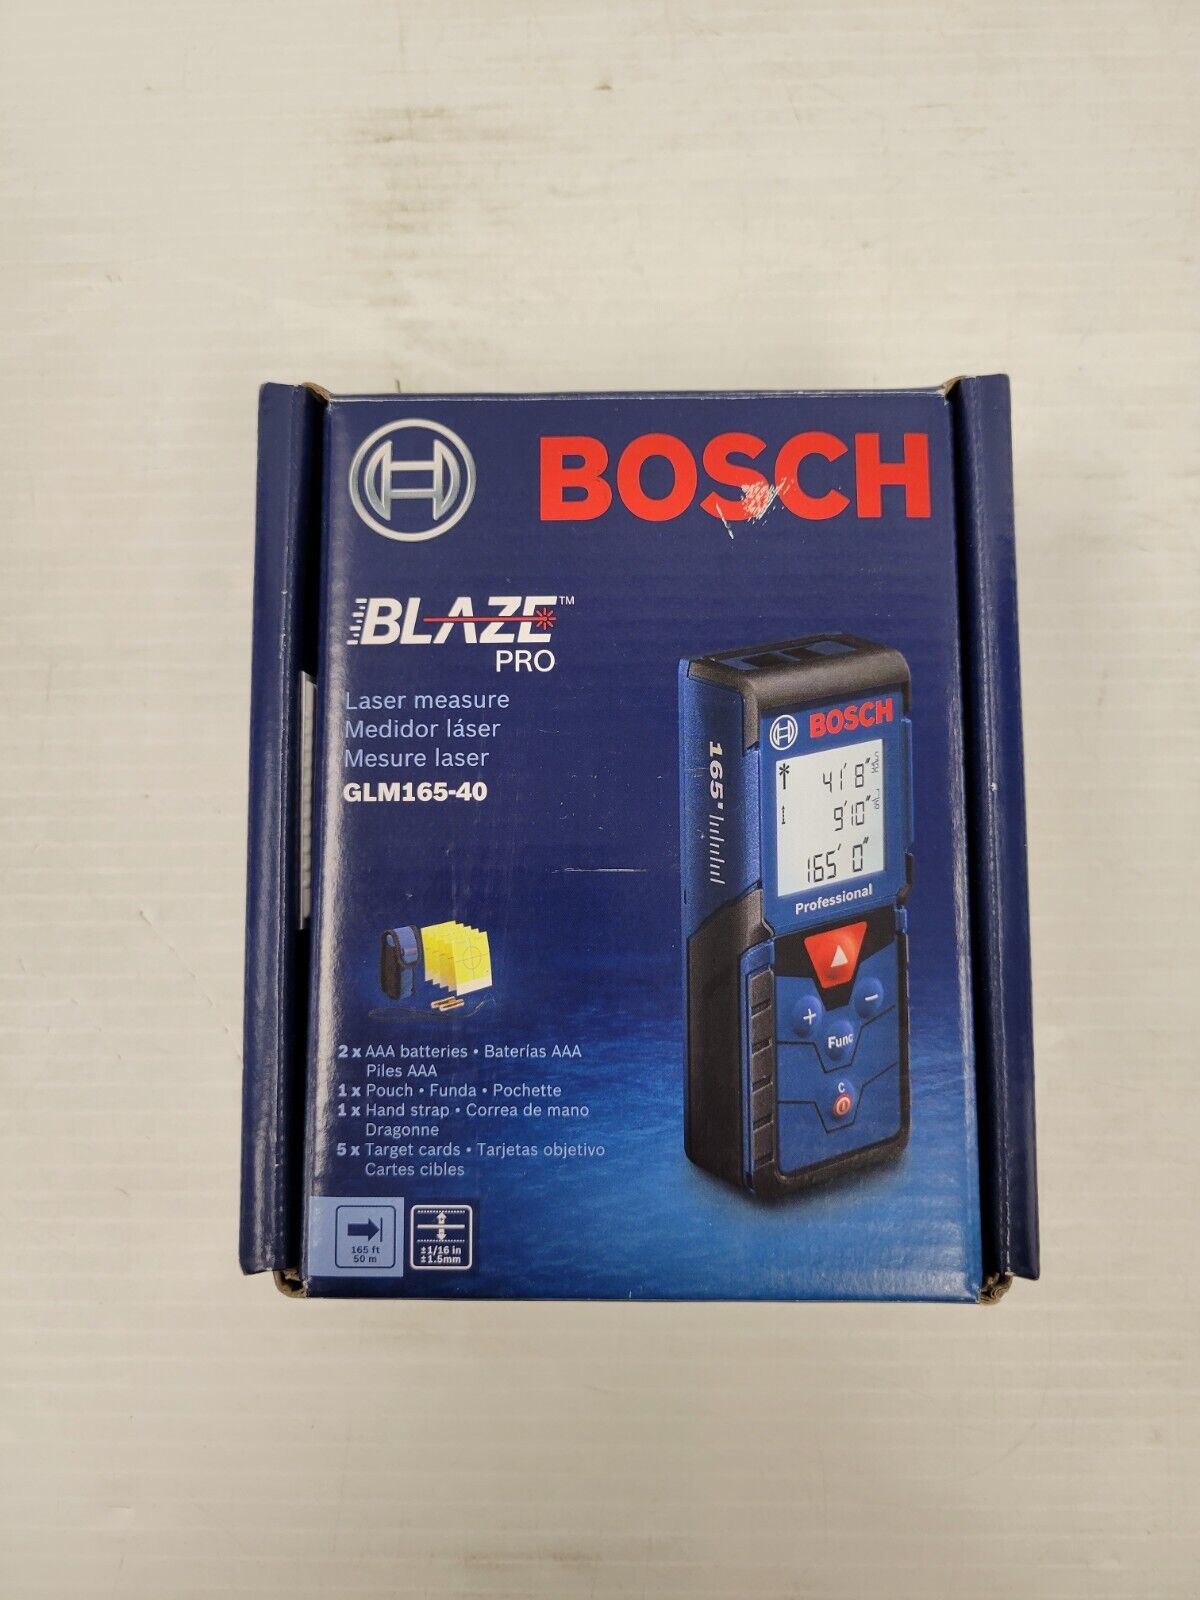 (I-33962) Bosch GLM165-40 Laser Measure